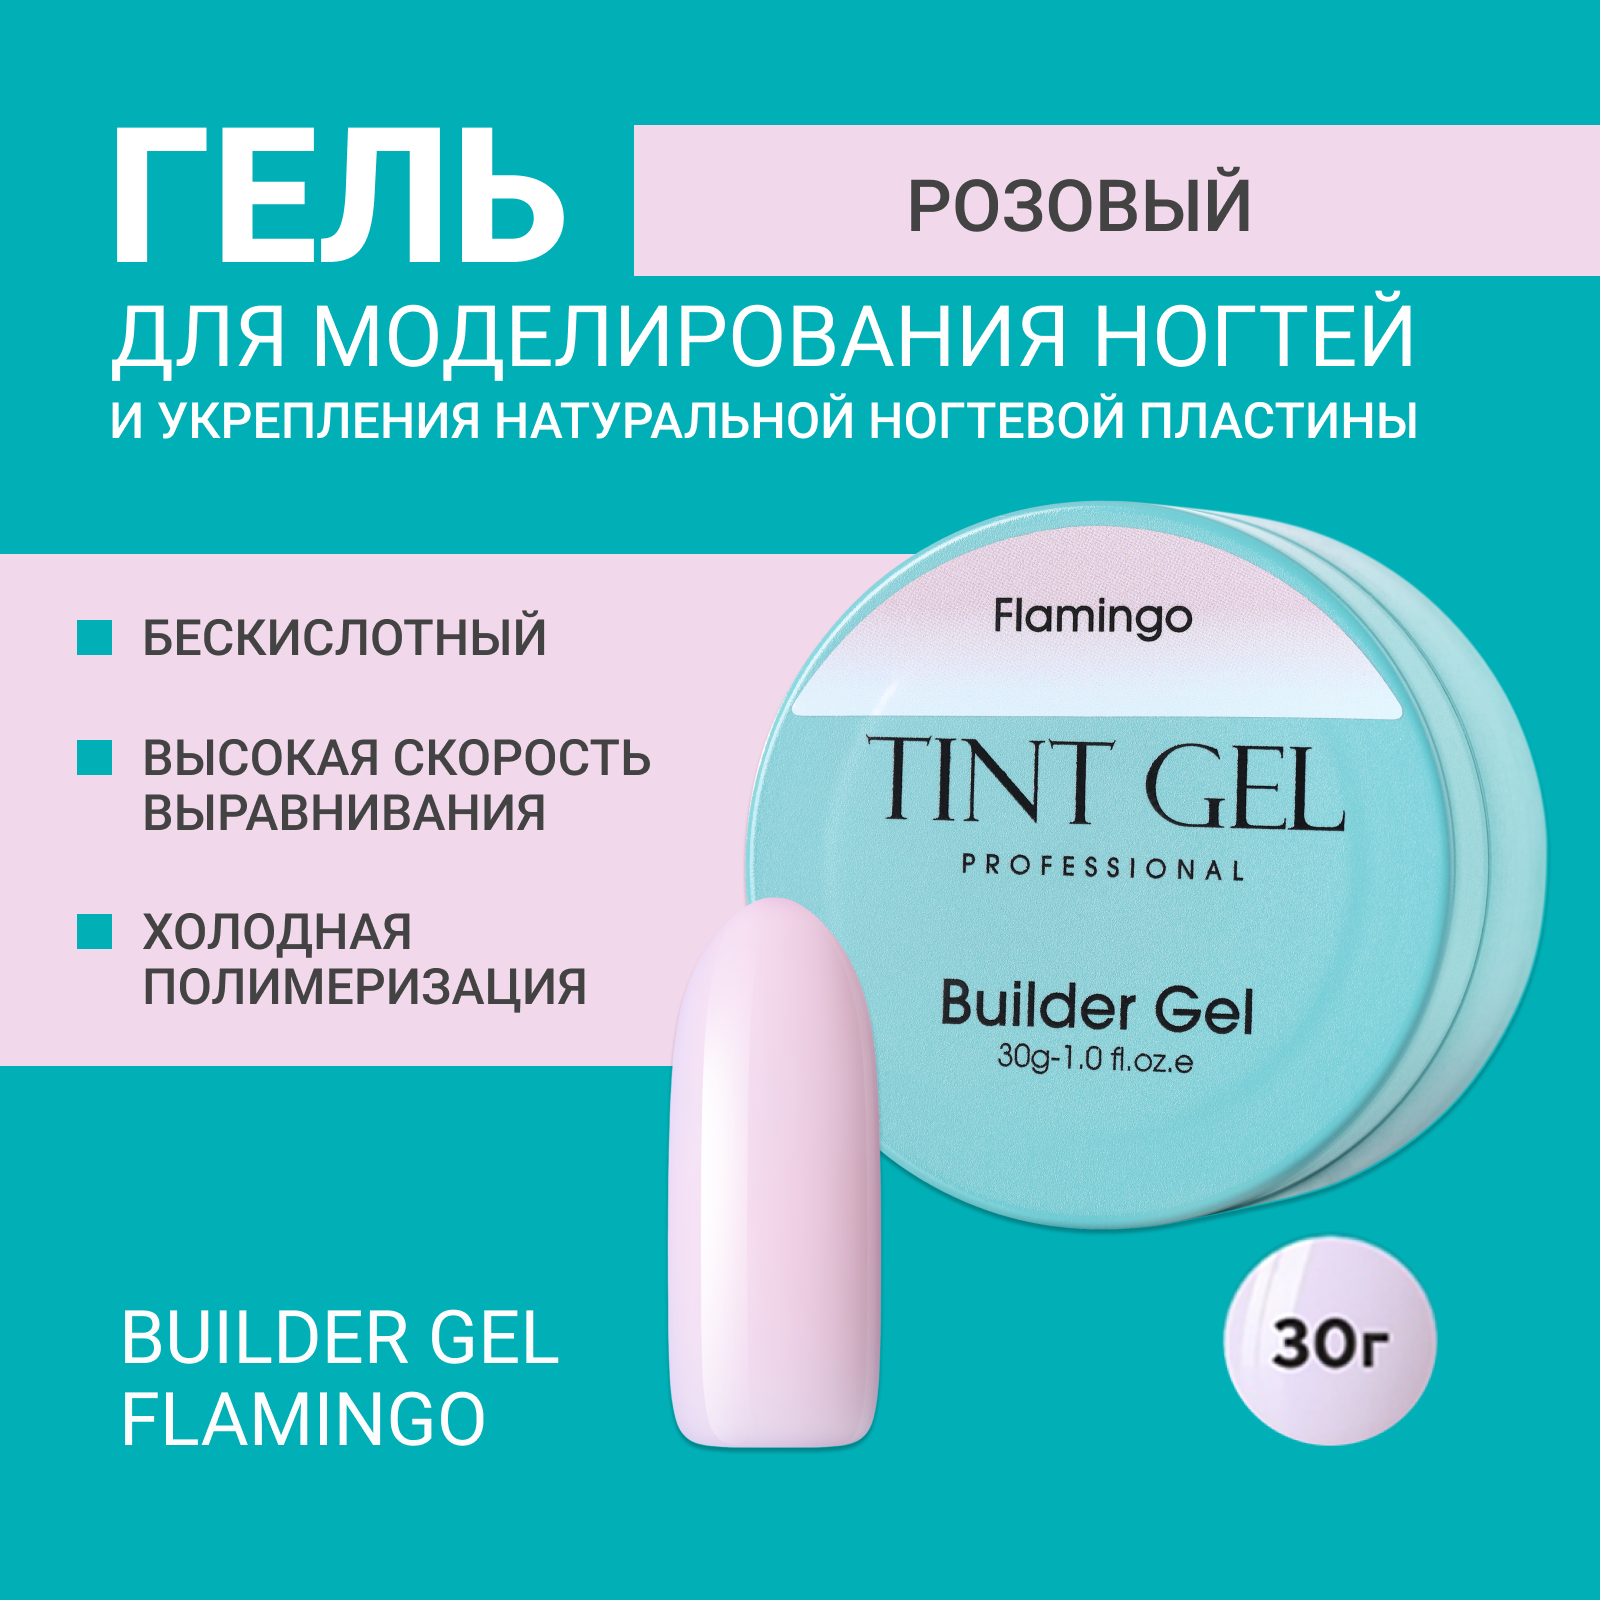 Гель Tint Gel Professional Builder gel Flamingo 30 г